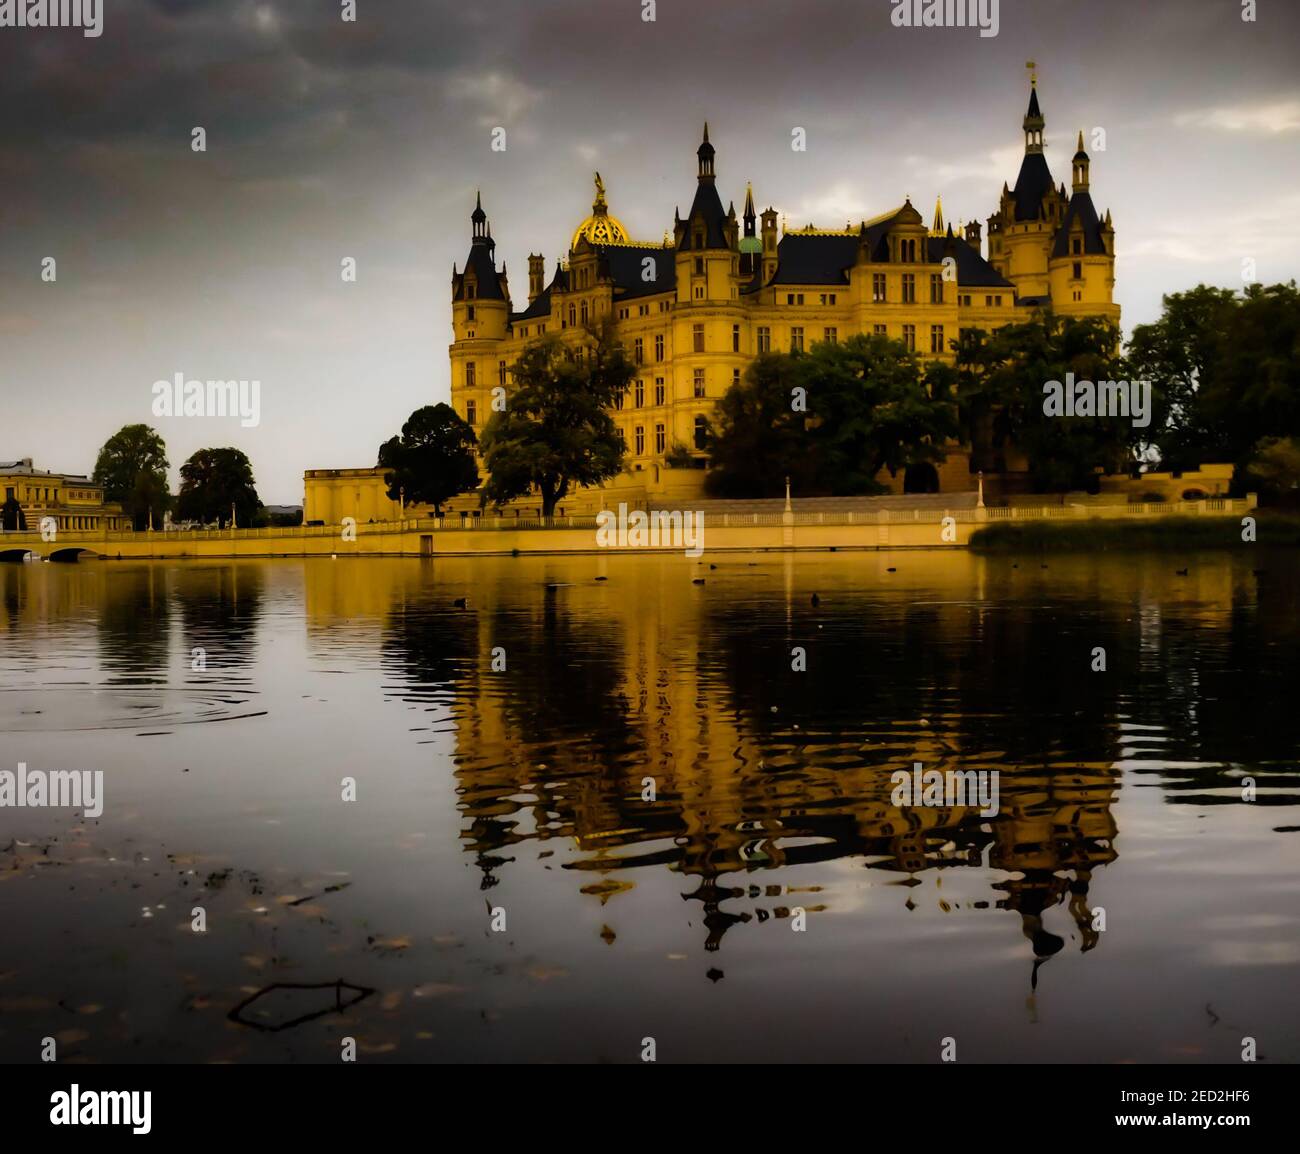 Vista espectacular del castillo Schwerin junto al lago Foto de stock